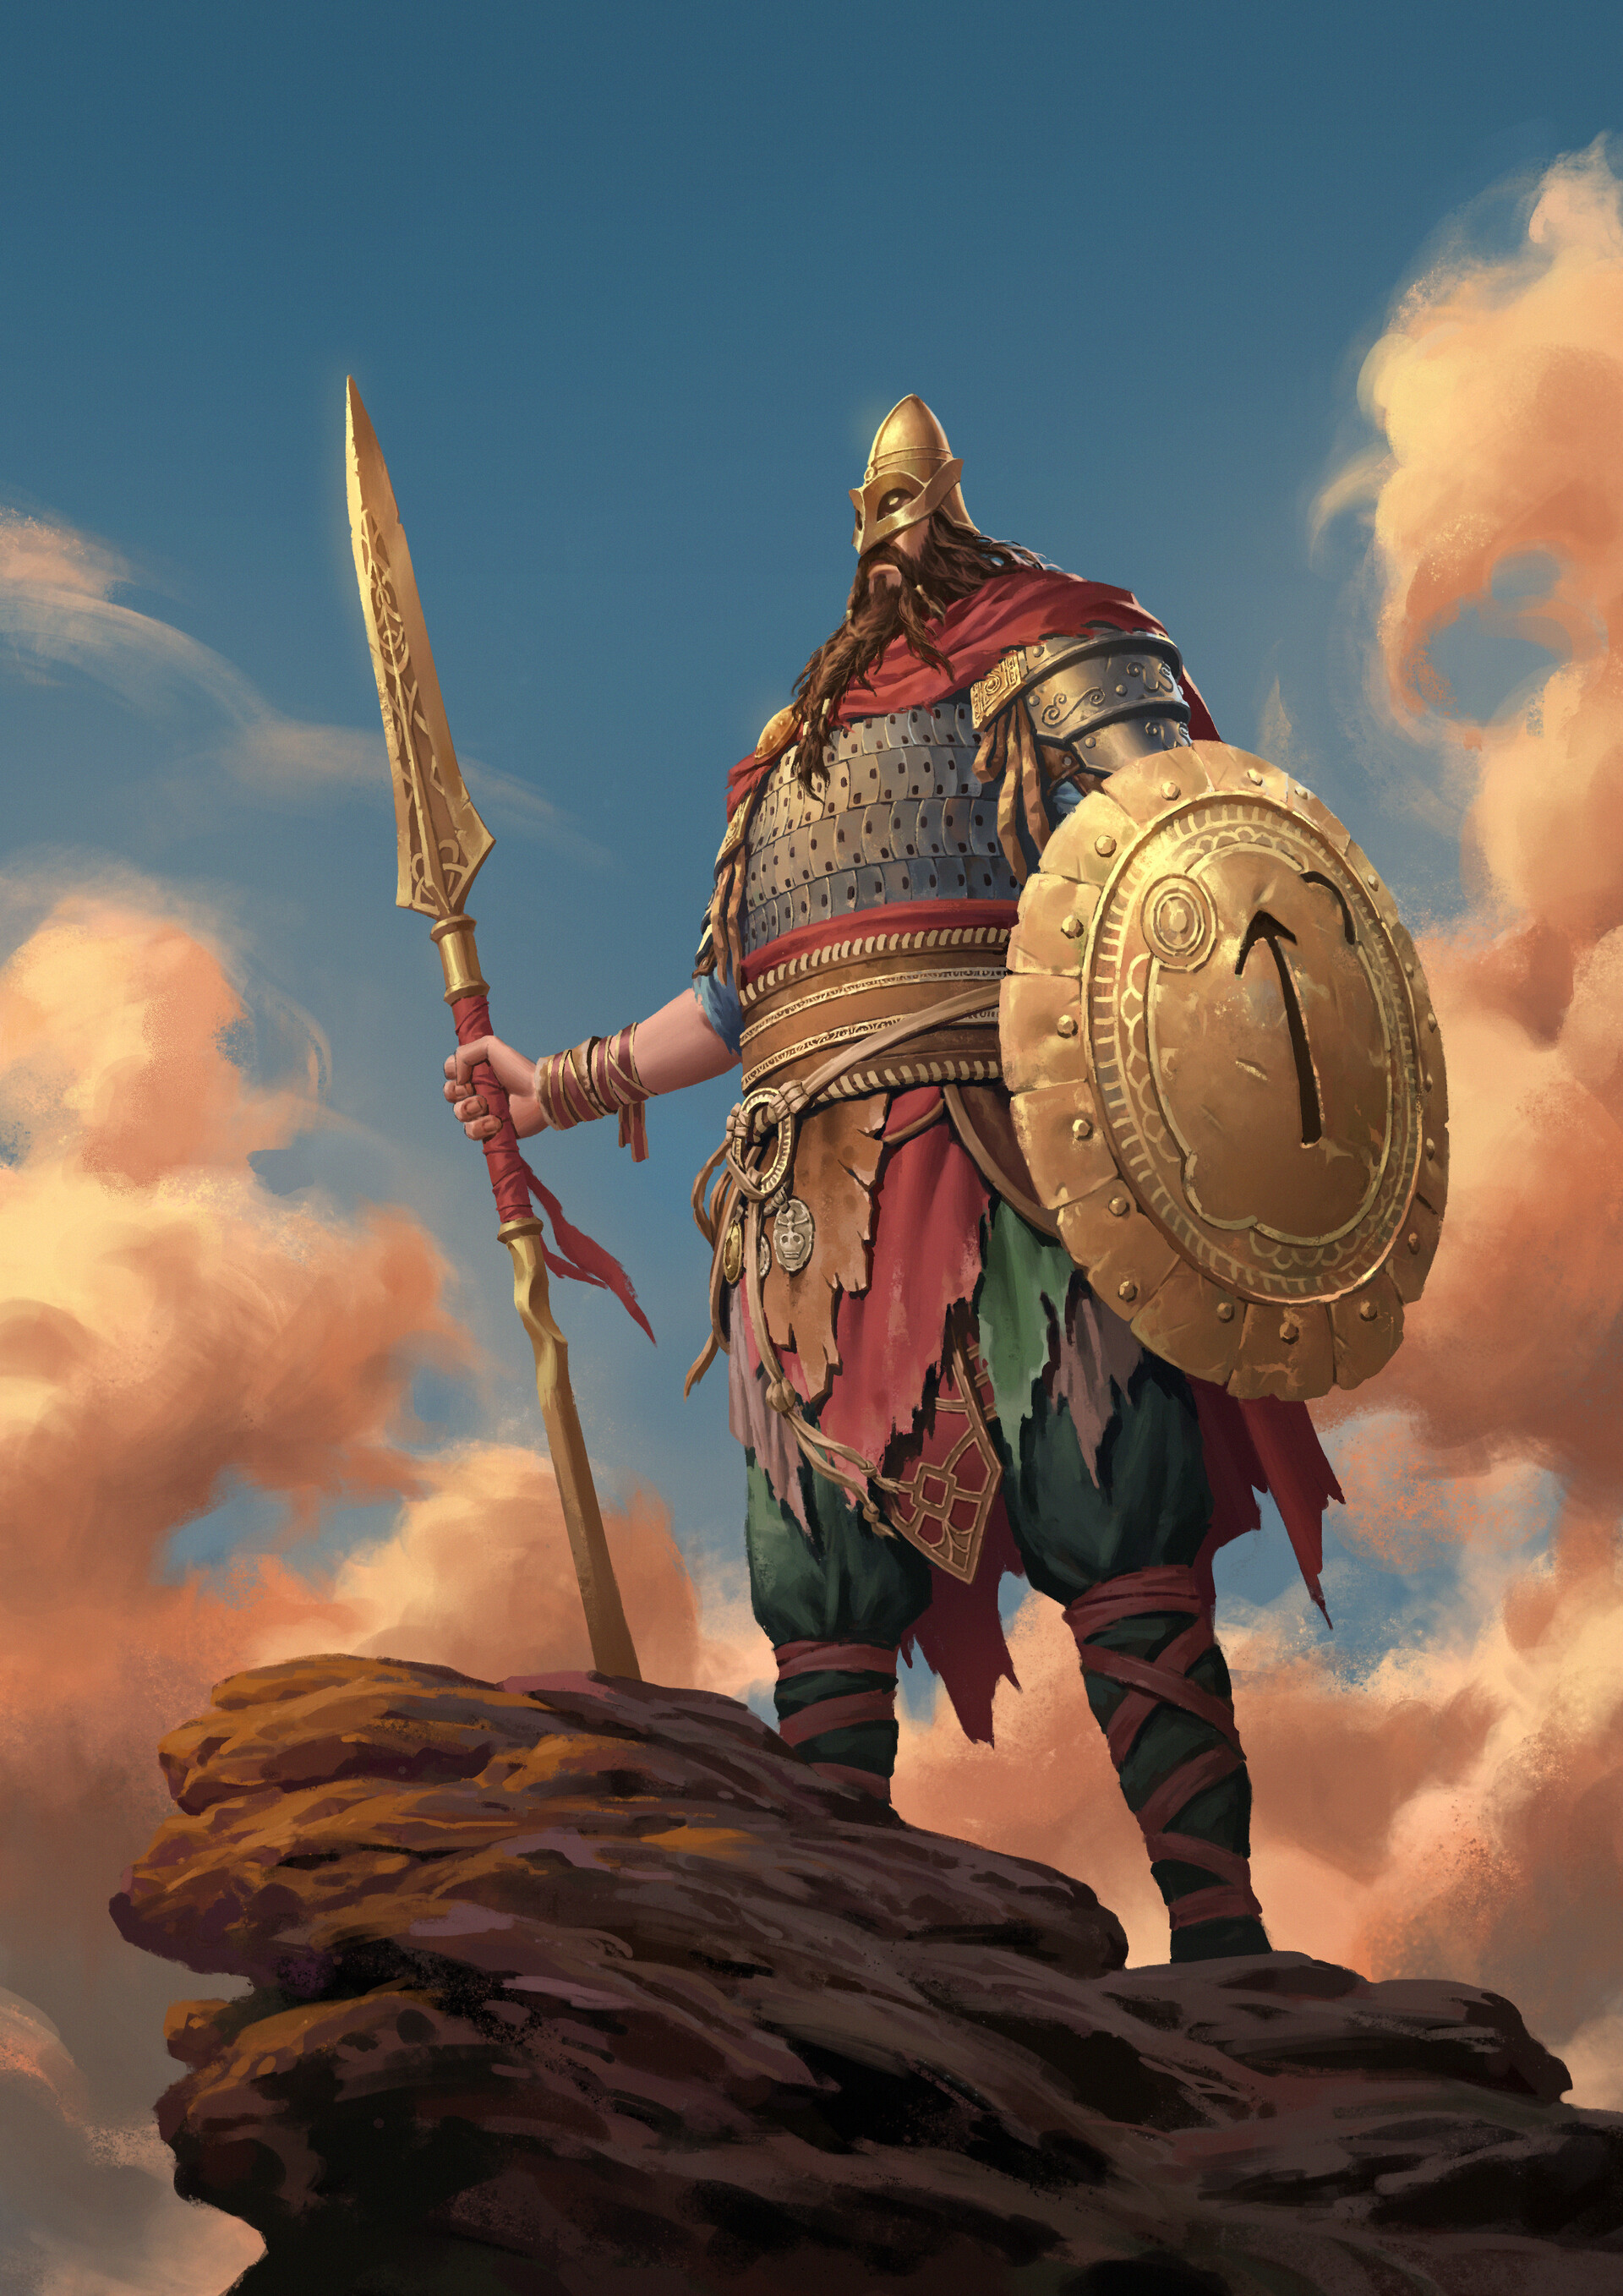 ArtStation - Tyr (God of War Ragnarok)